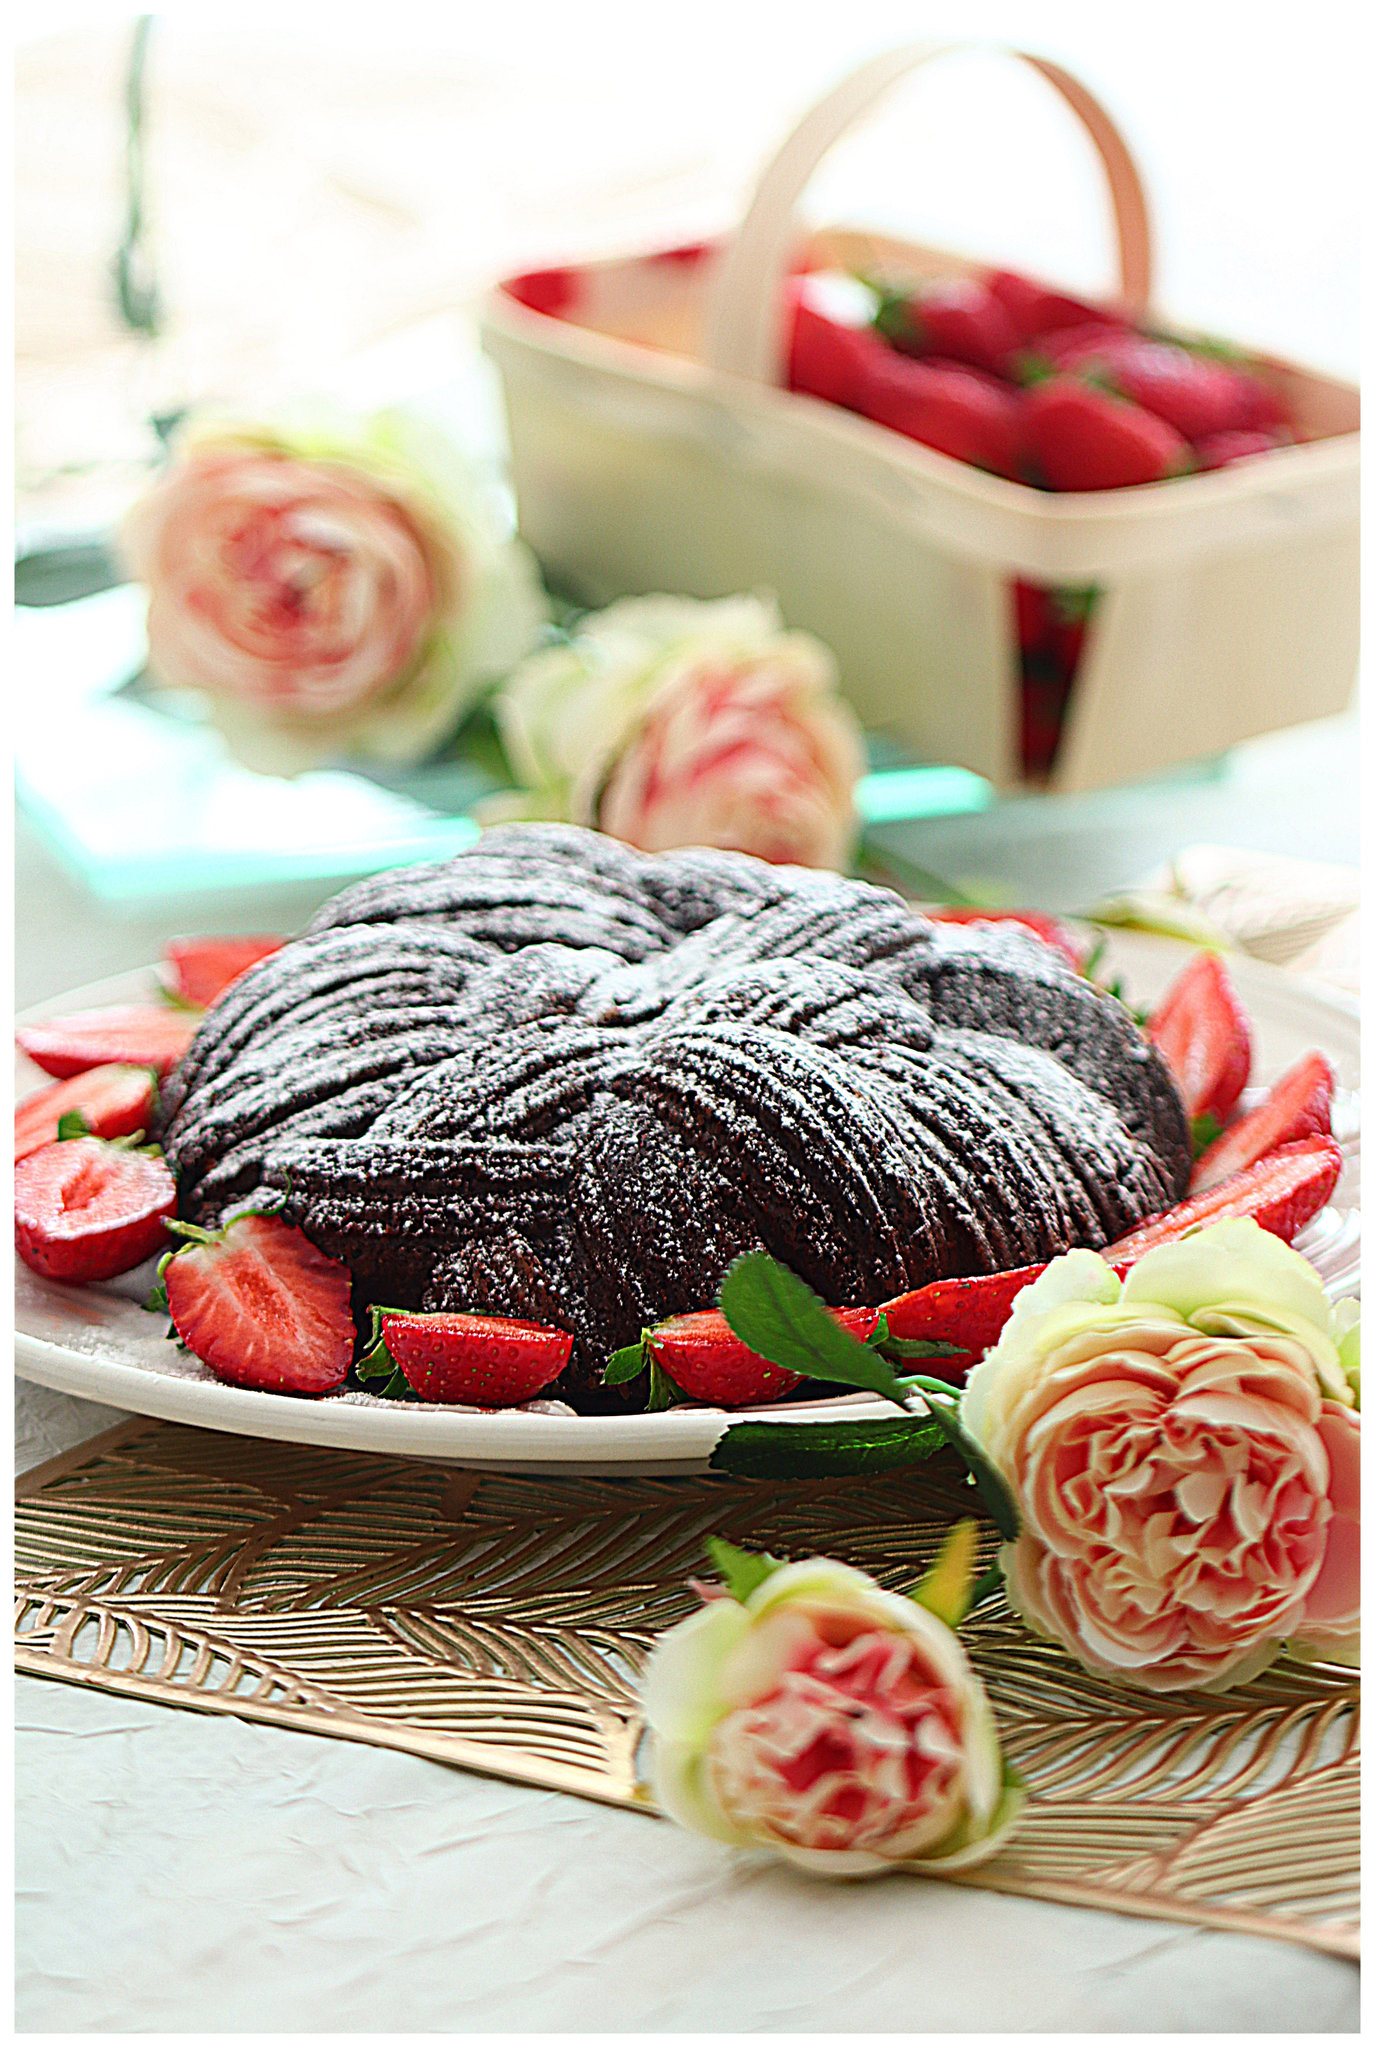 Gâteau au chocolat de Cyril Lignac et moule Wooly Silikomart, partenariat Alice  Délice - NICOLE PASSIONS